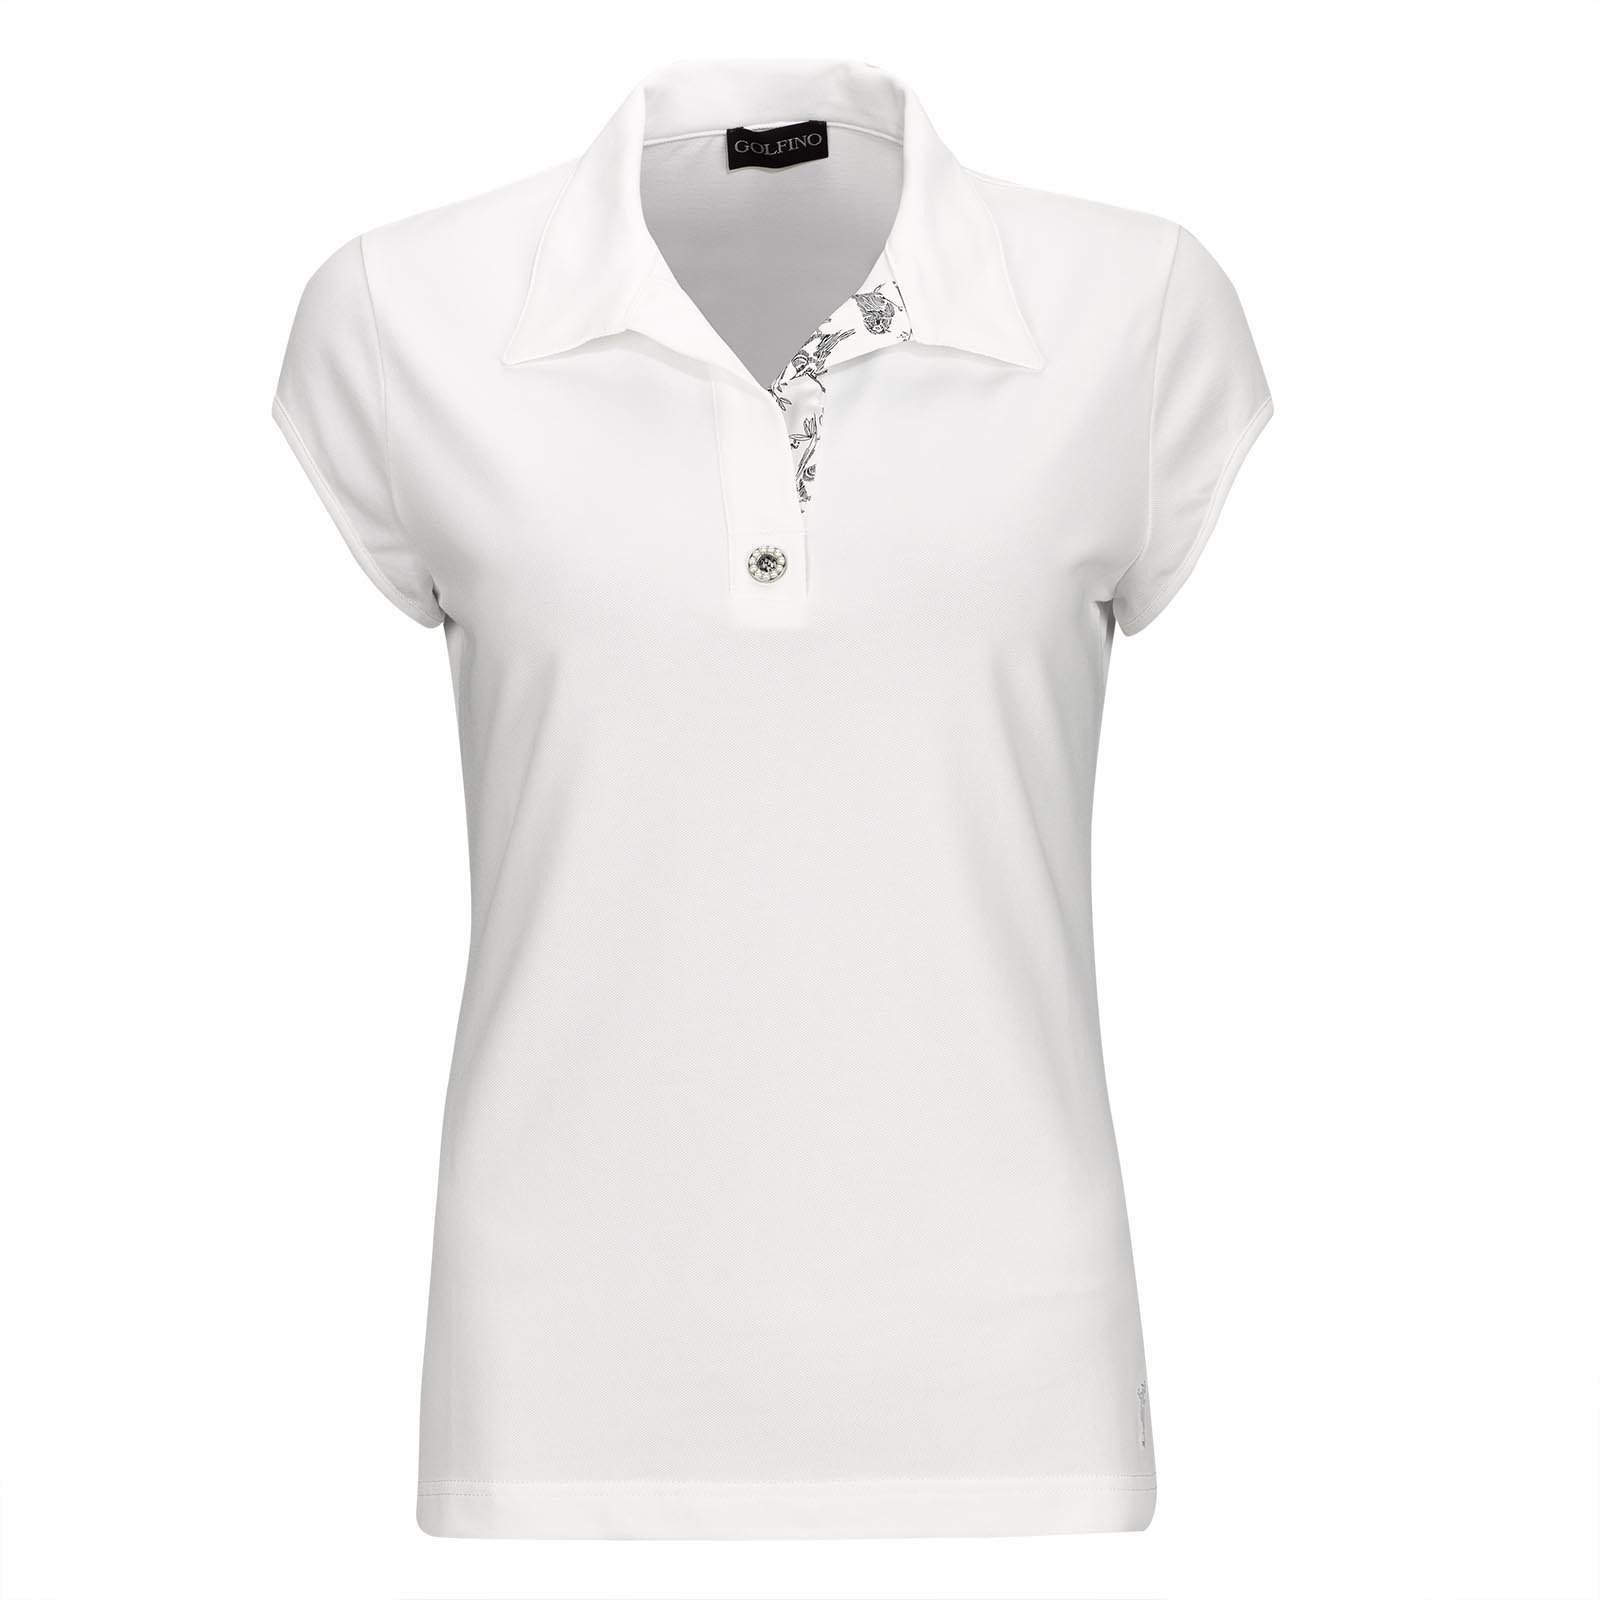 Πουκάμισα Πόλο Golfino Pearls Cap Sleeve Womens Polo Shirt White 40